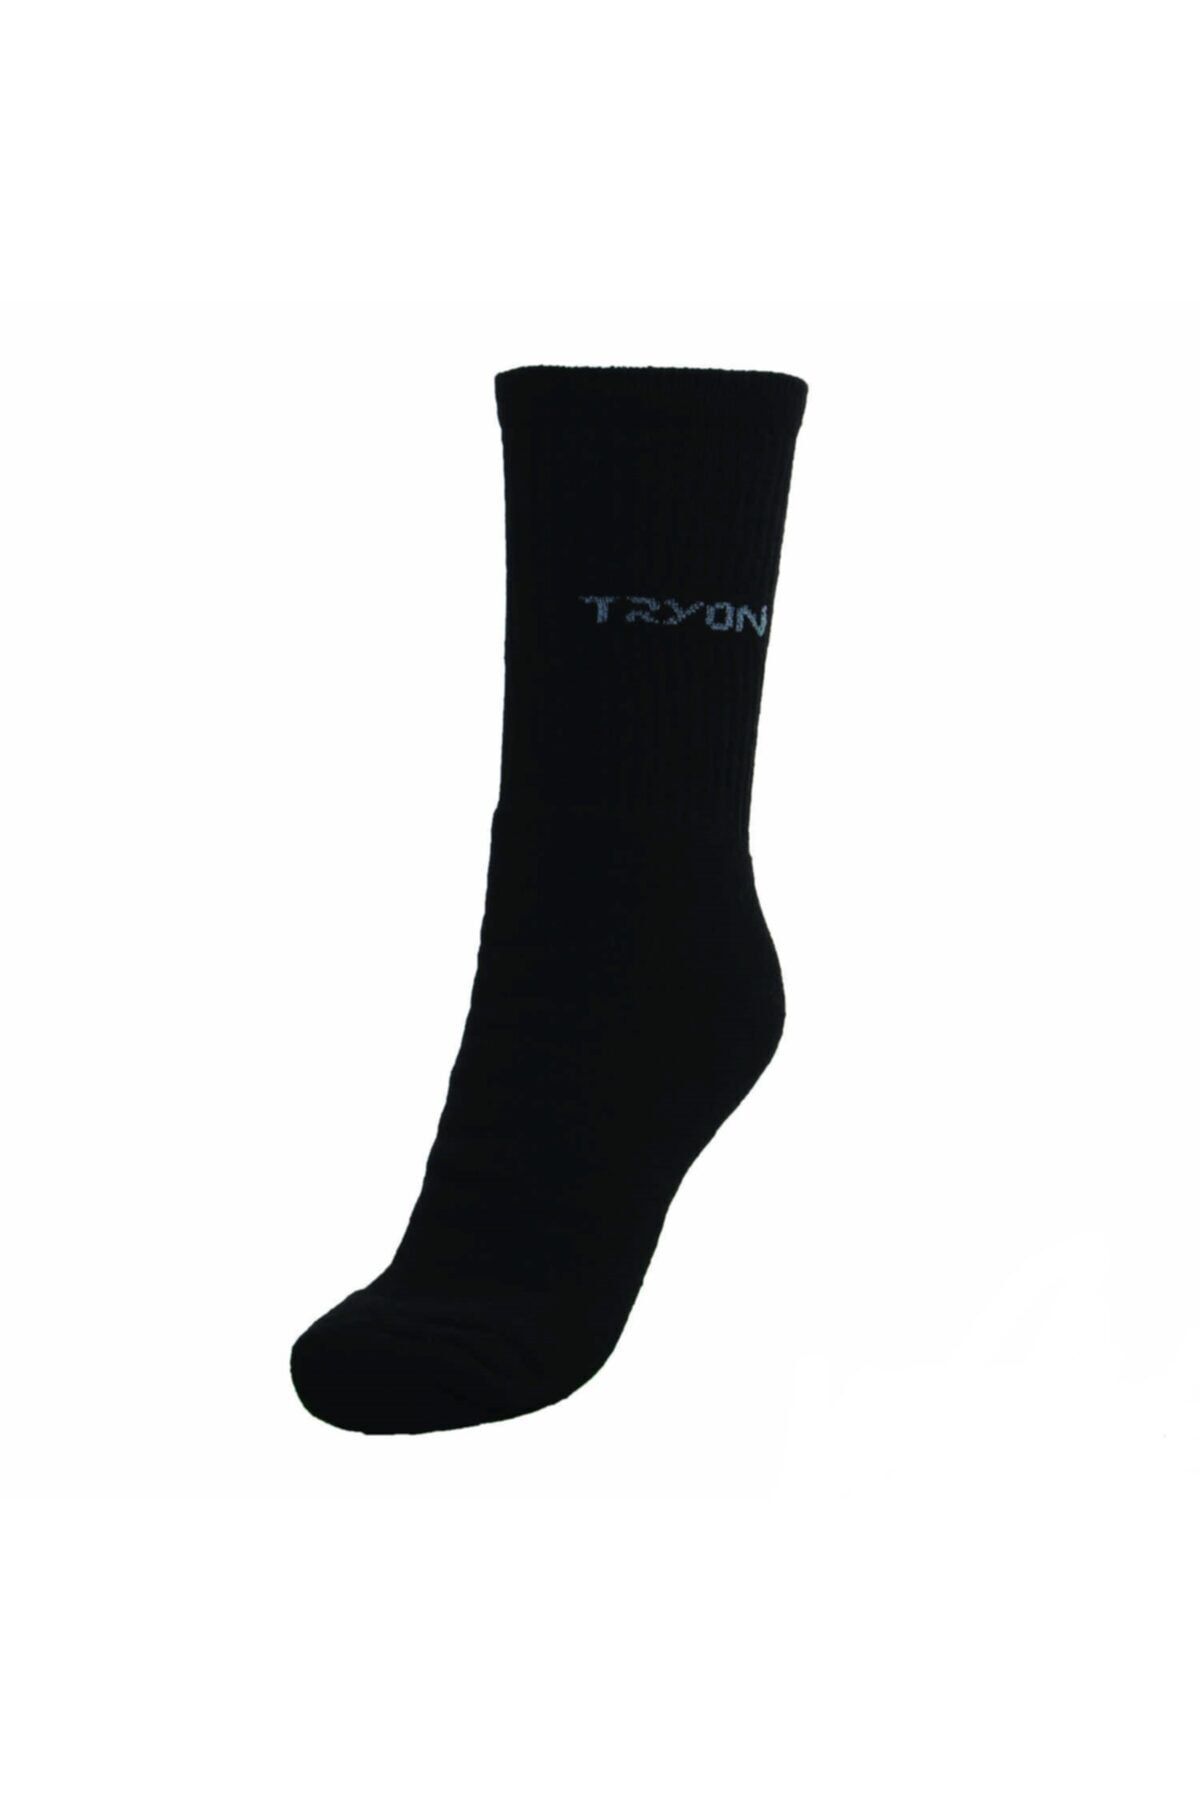 TRYON Spor Çorabı Antrenman Çorabı Havlu Kısa Çorap Kısa Konç